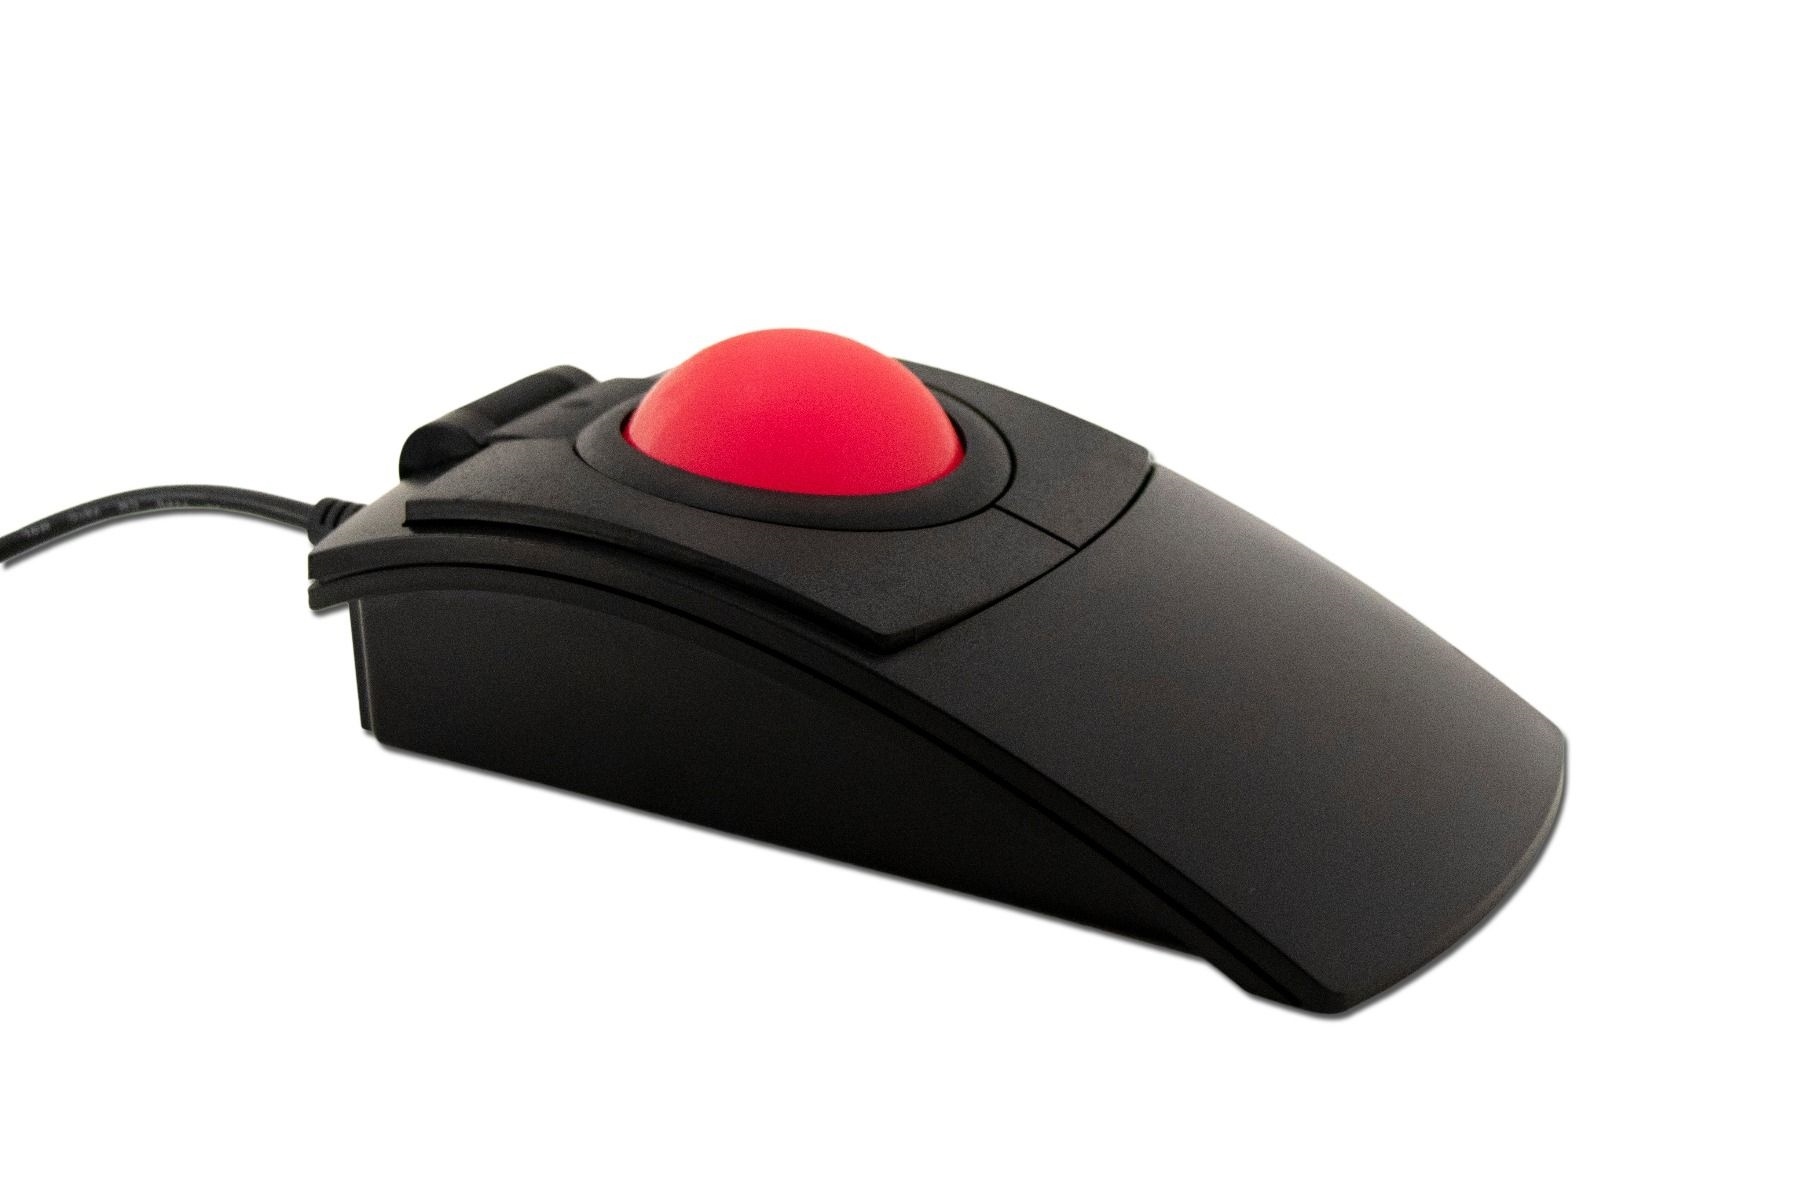 X-keys L-Trac Trackball (Red)